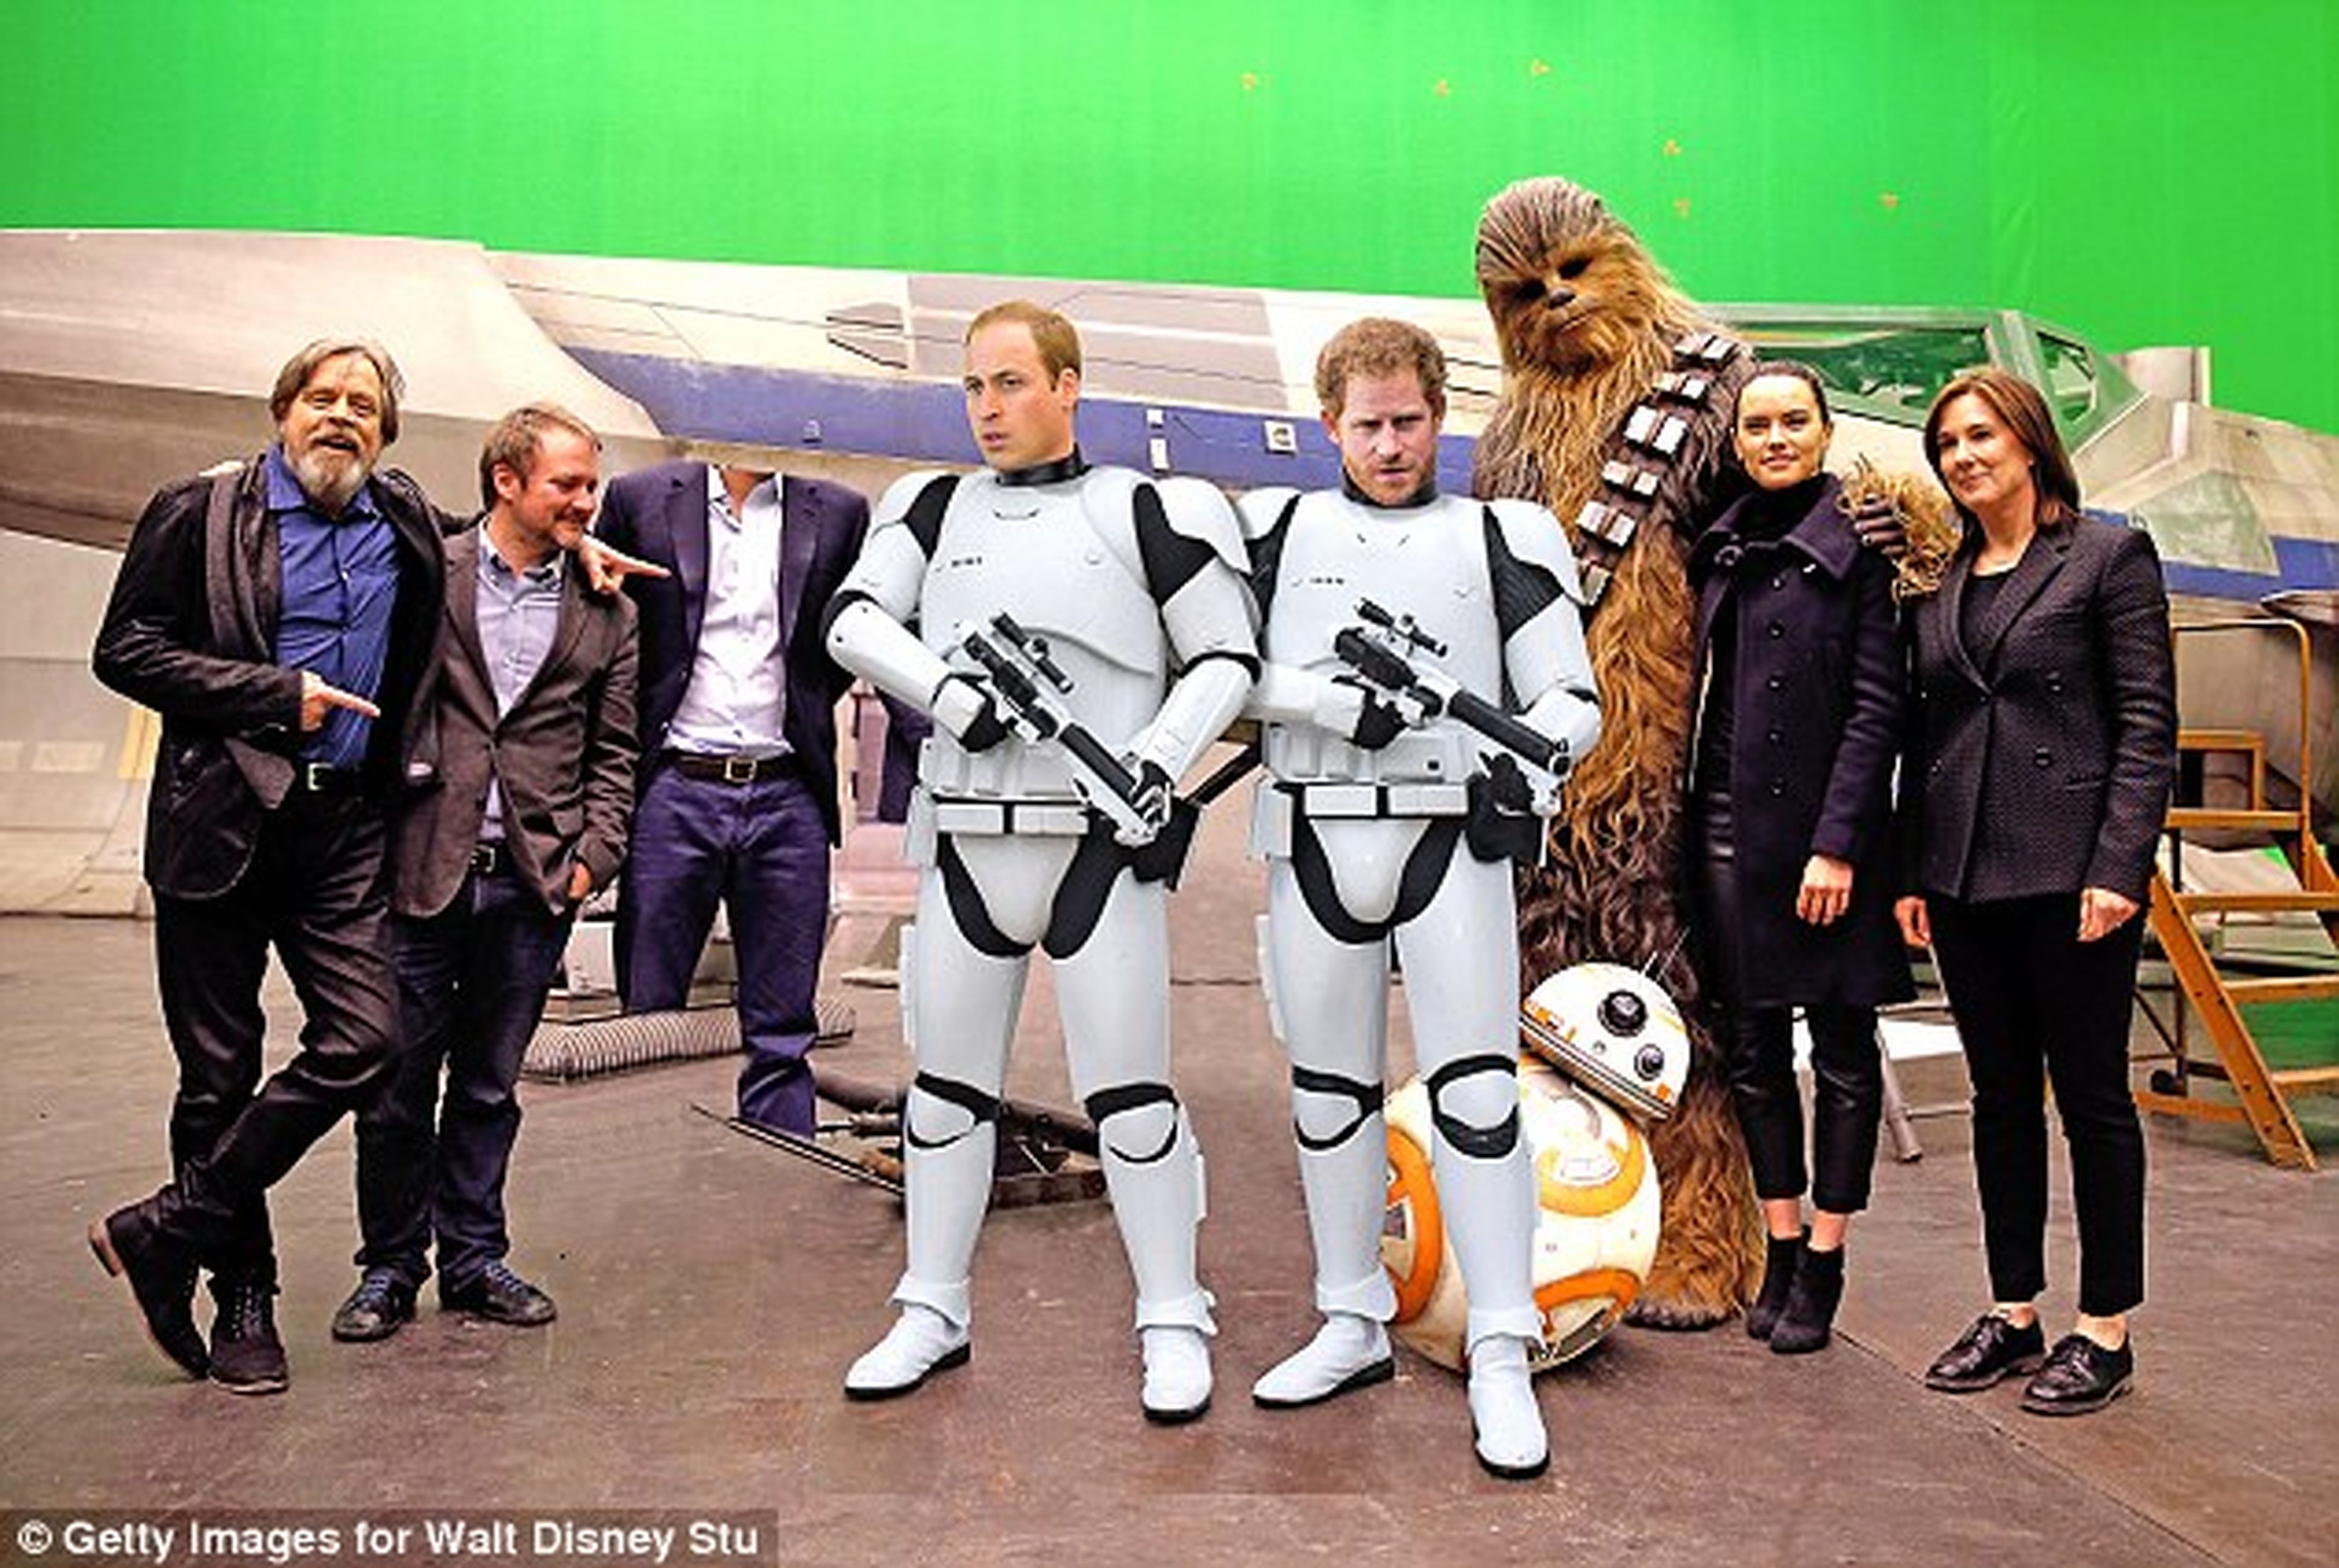 Star Wars Episodio VIII: Los príncipes Guillermo y Enrique harán un cameo en la película